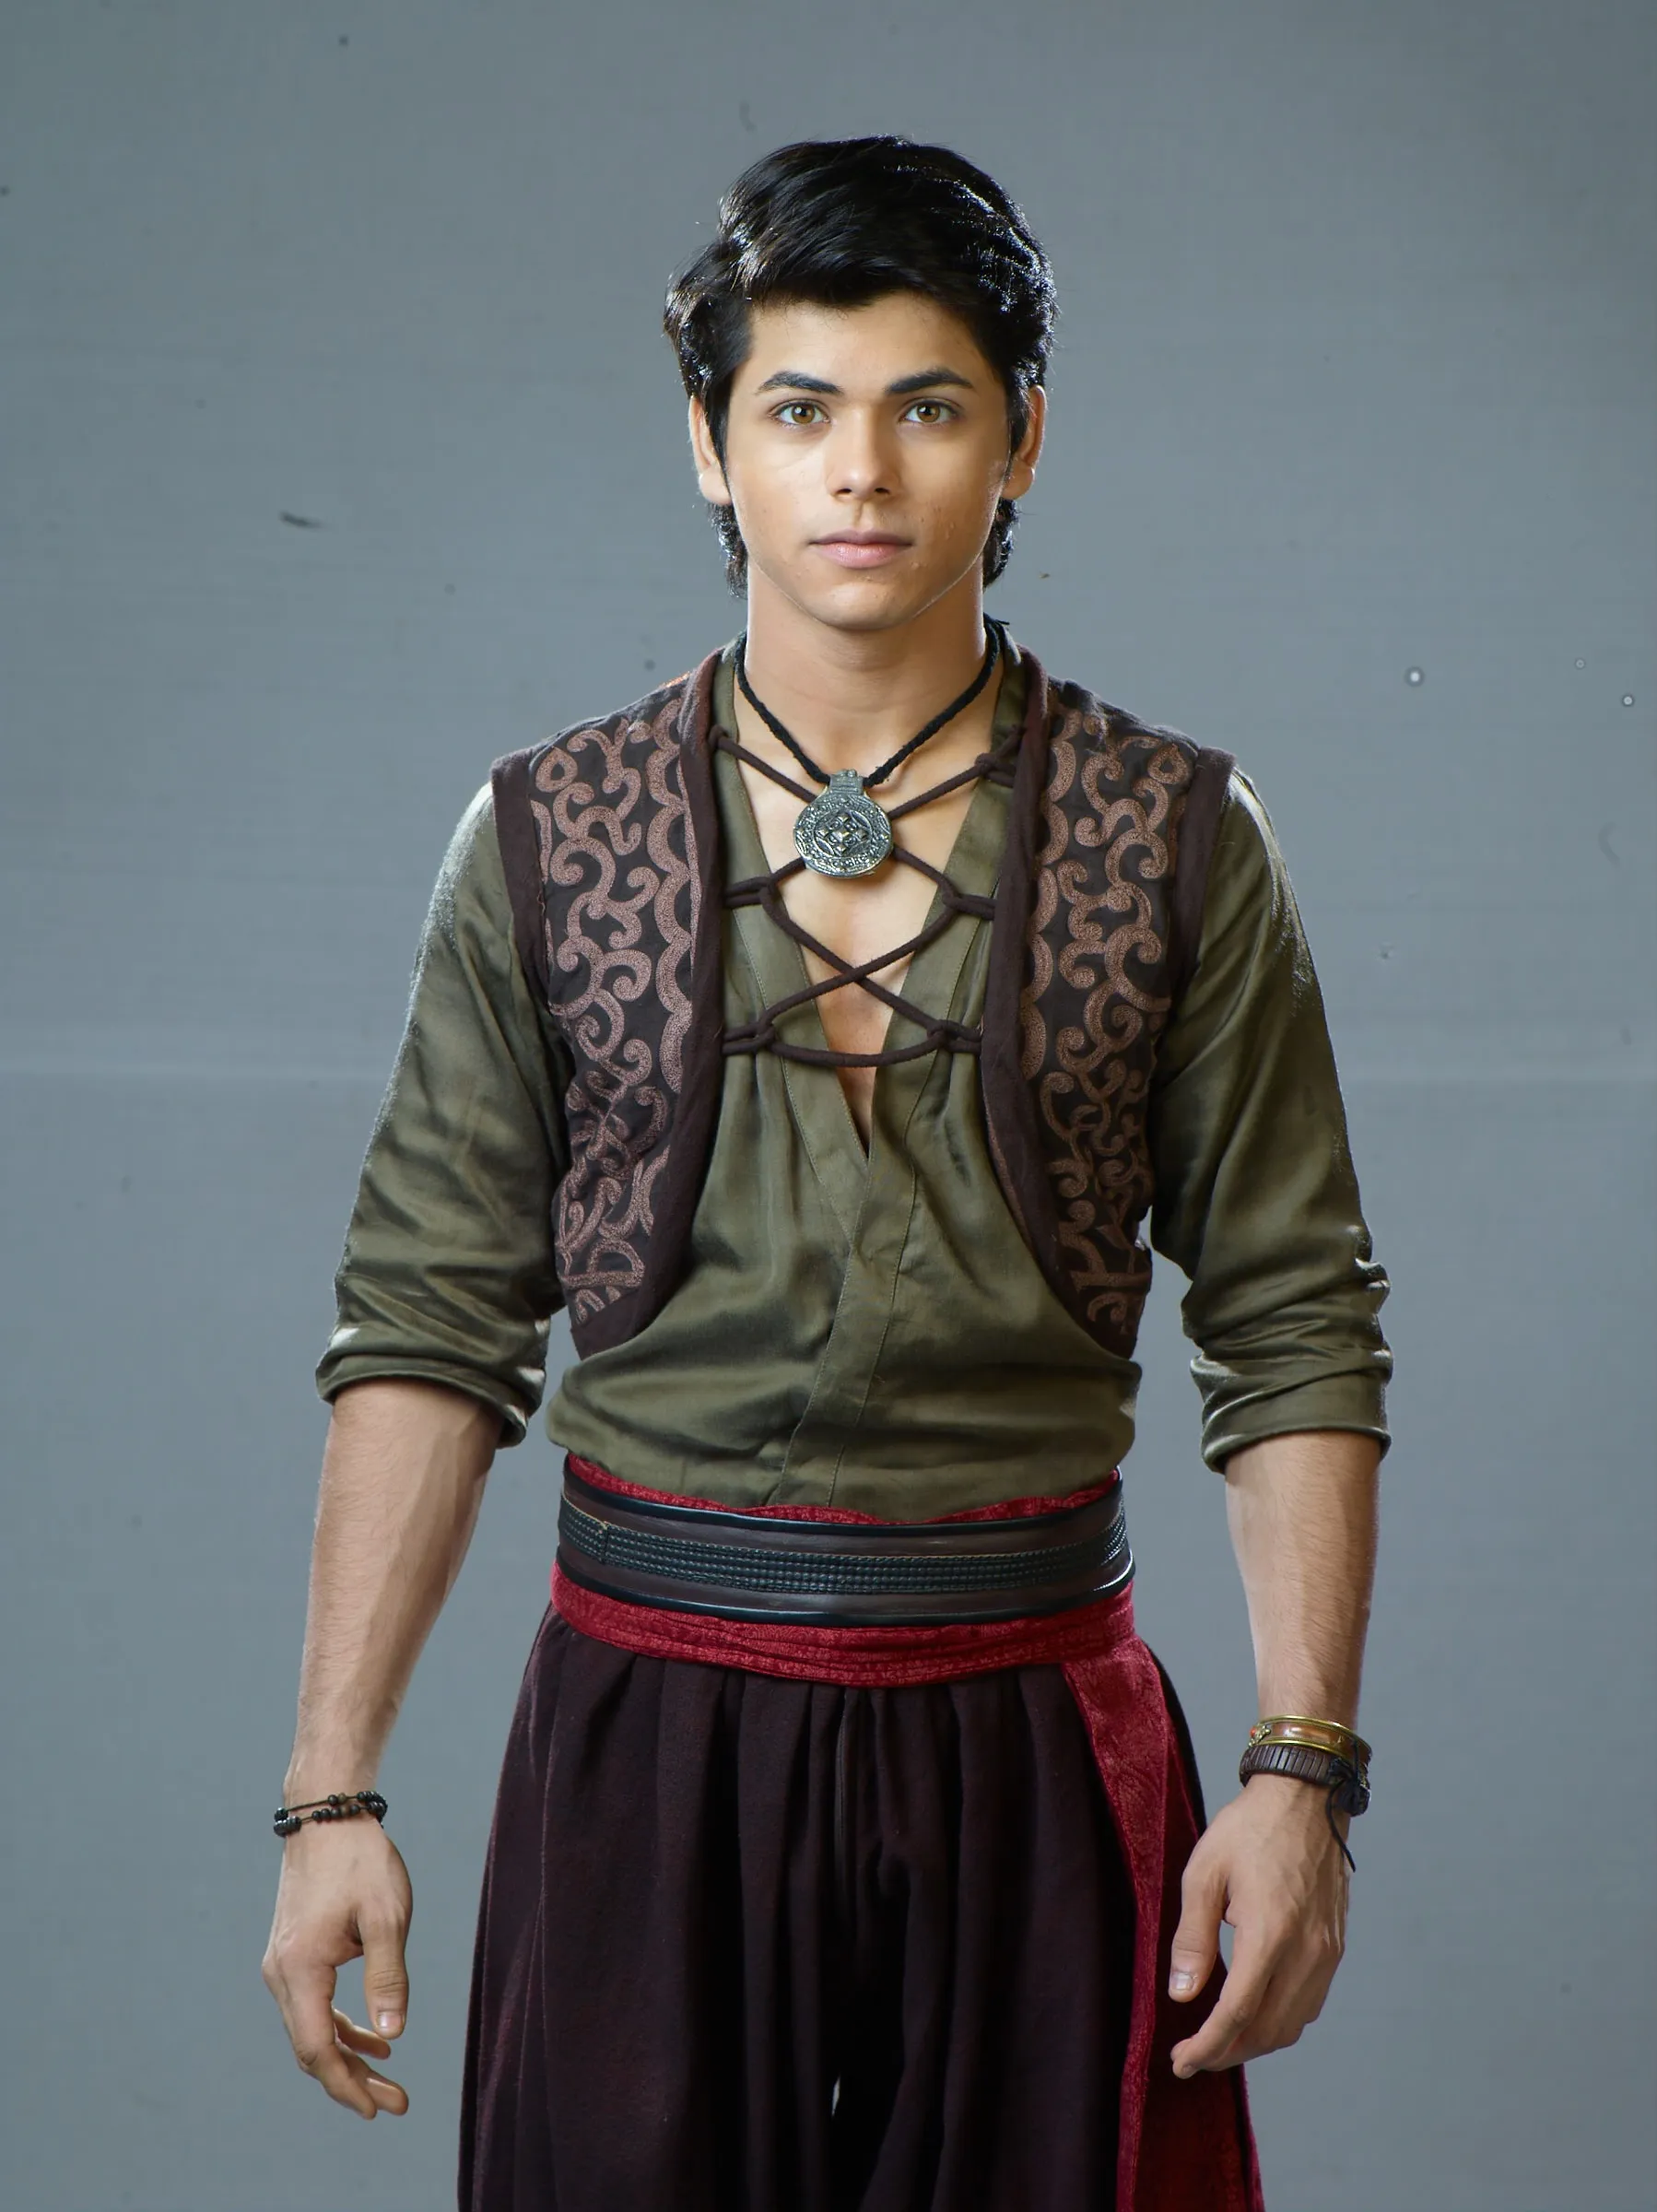 Siddharth Nigam as Aladdin - Copy